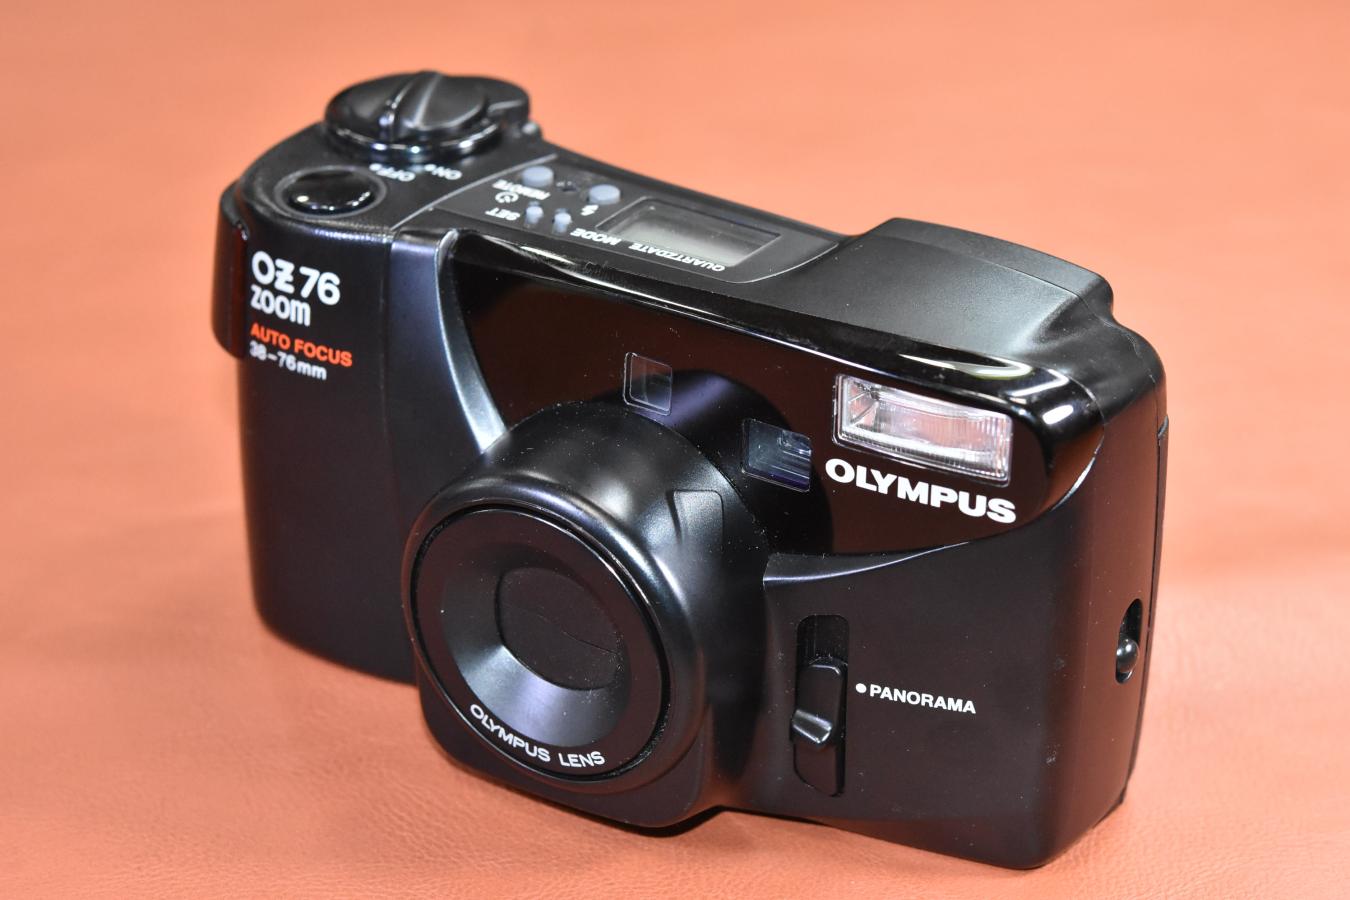 OLYMPUS OZ76 ZOOM【OLYMPUS AUTO FOCUS 38-76mm レンズ搭載】